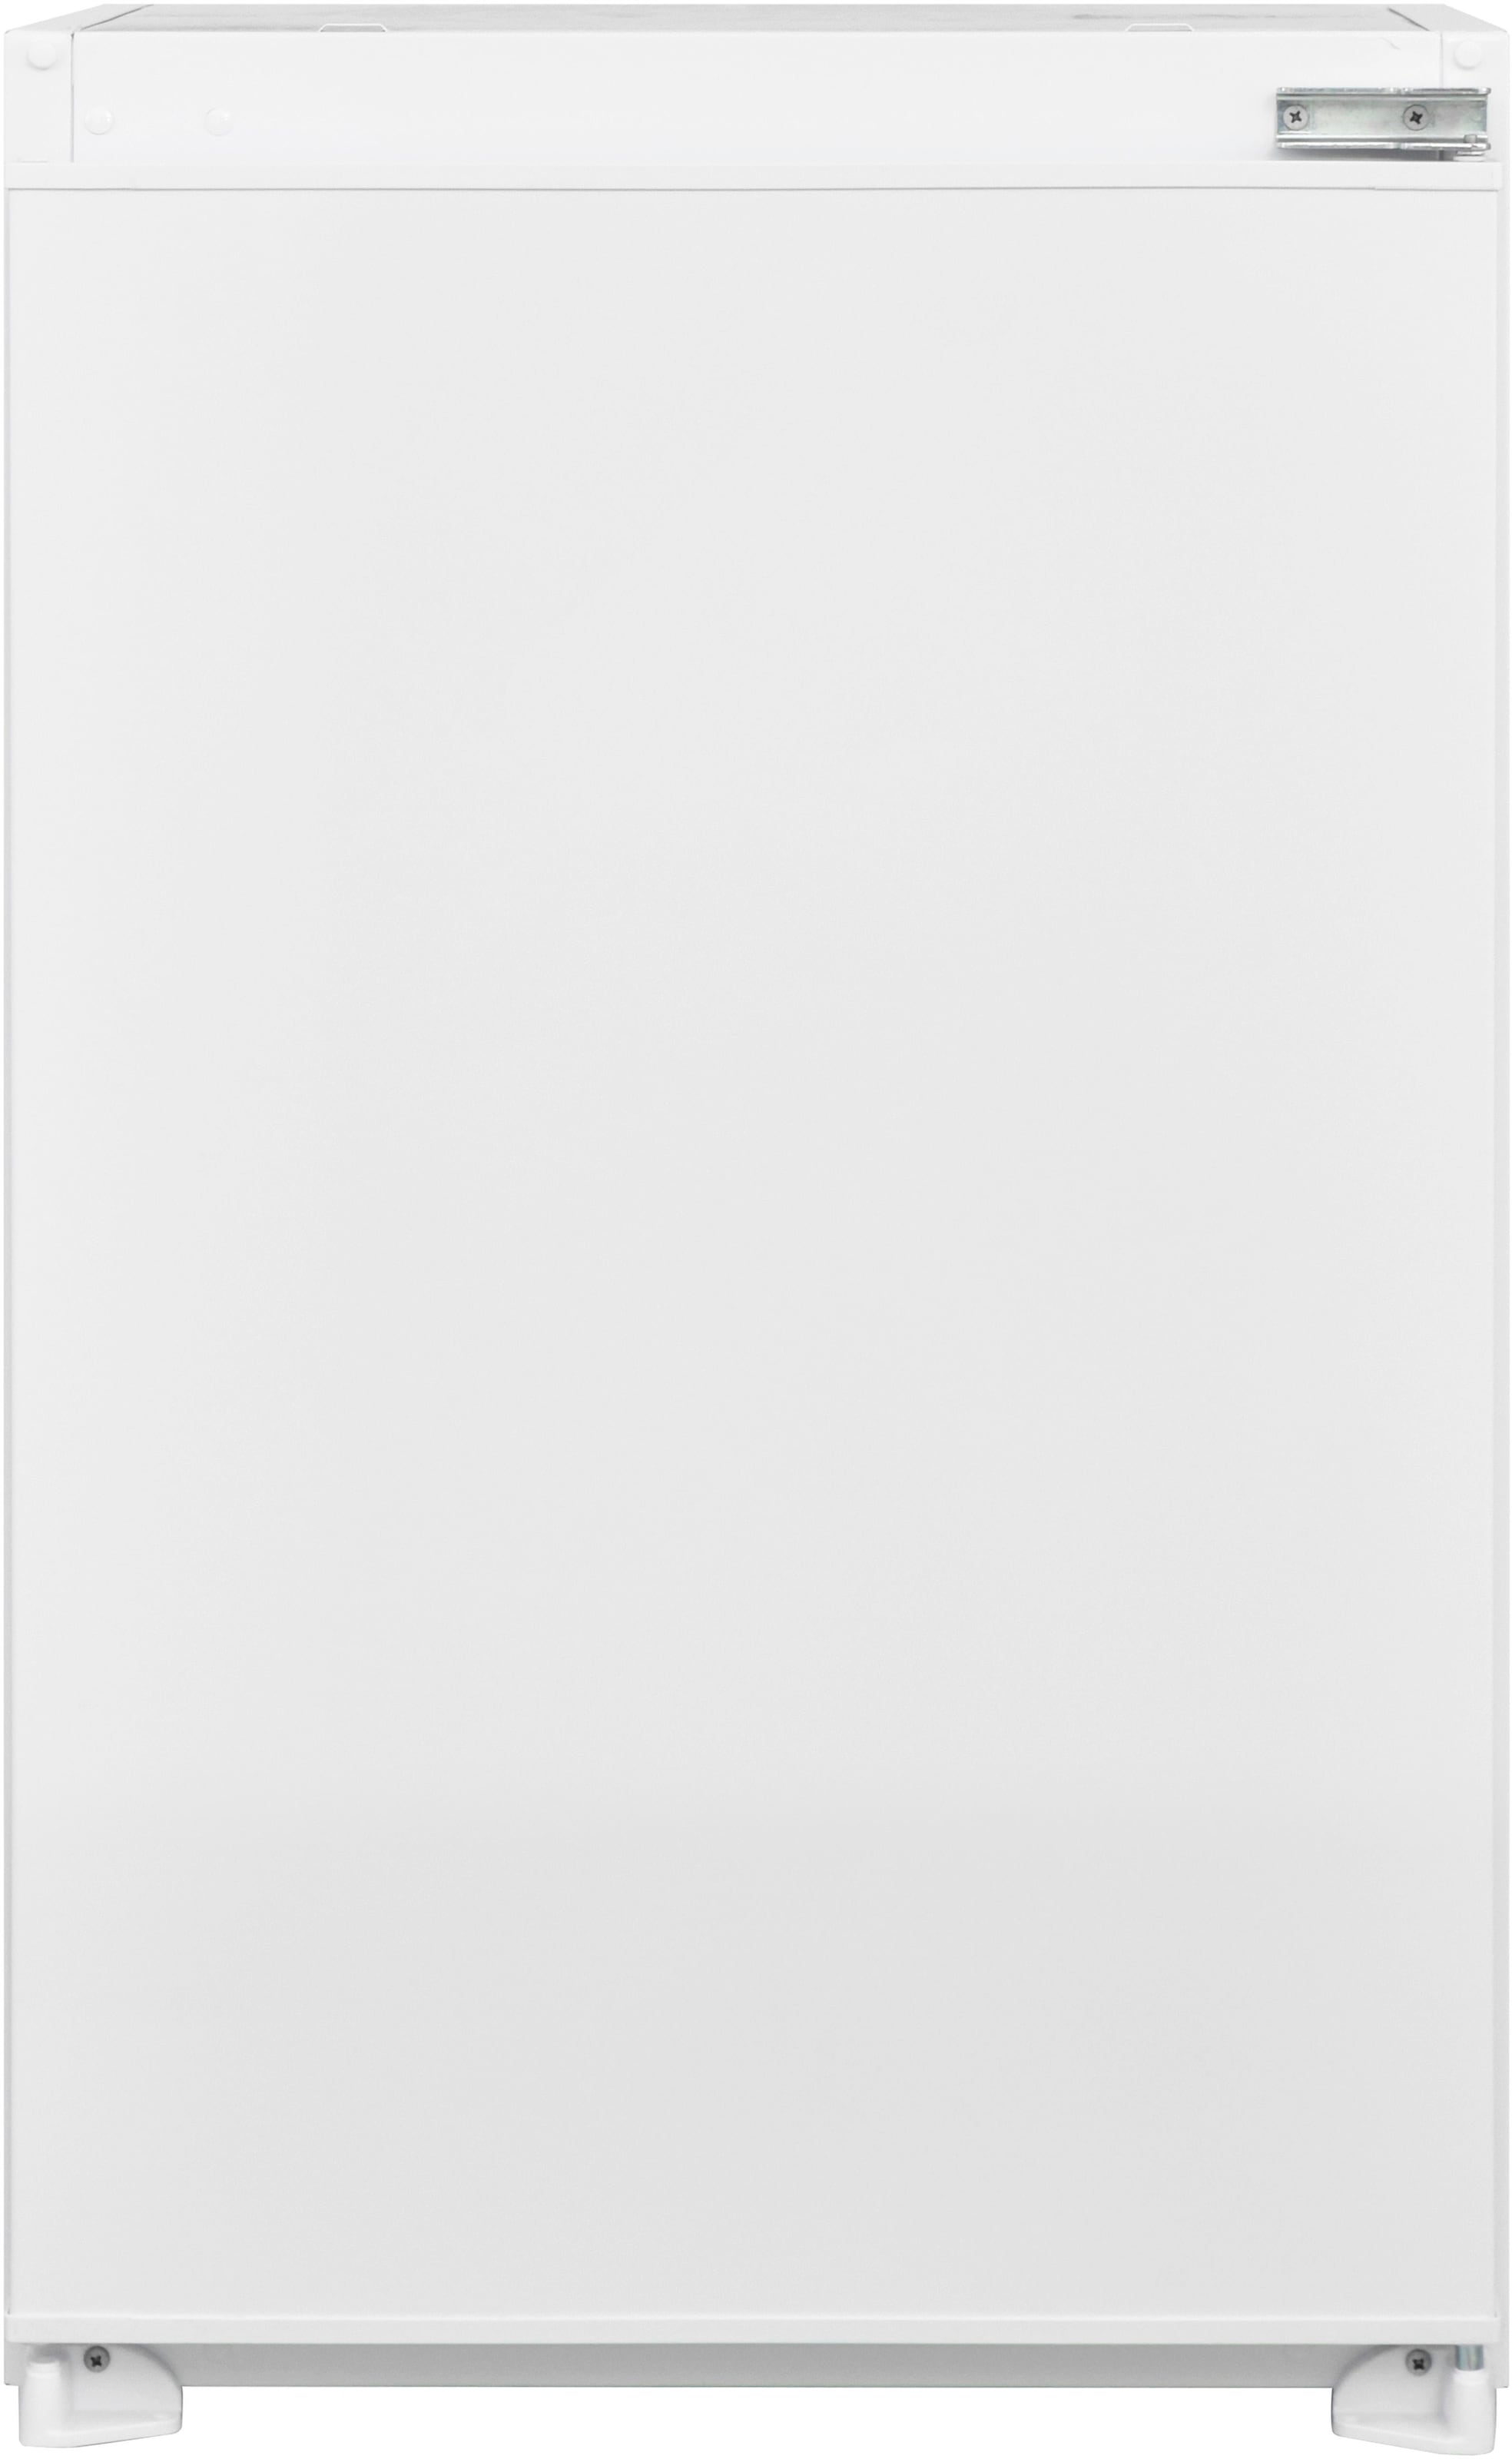 Flex-Well Küchenzeile »Florenz«, mit E-Geräten, Gesamtbreite 310 x 170 cm  auf Raten kaufen